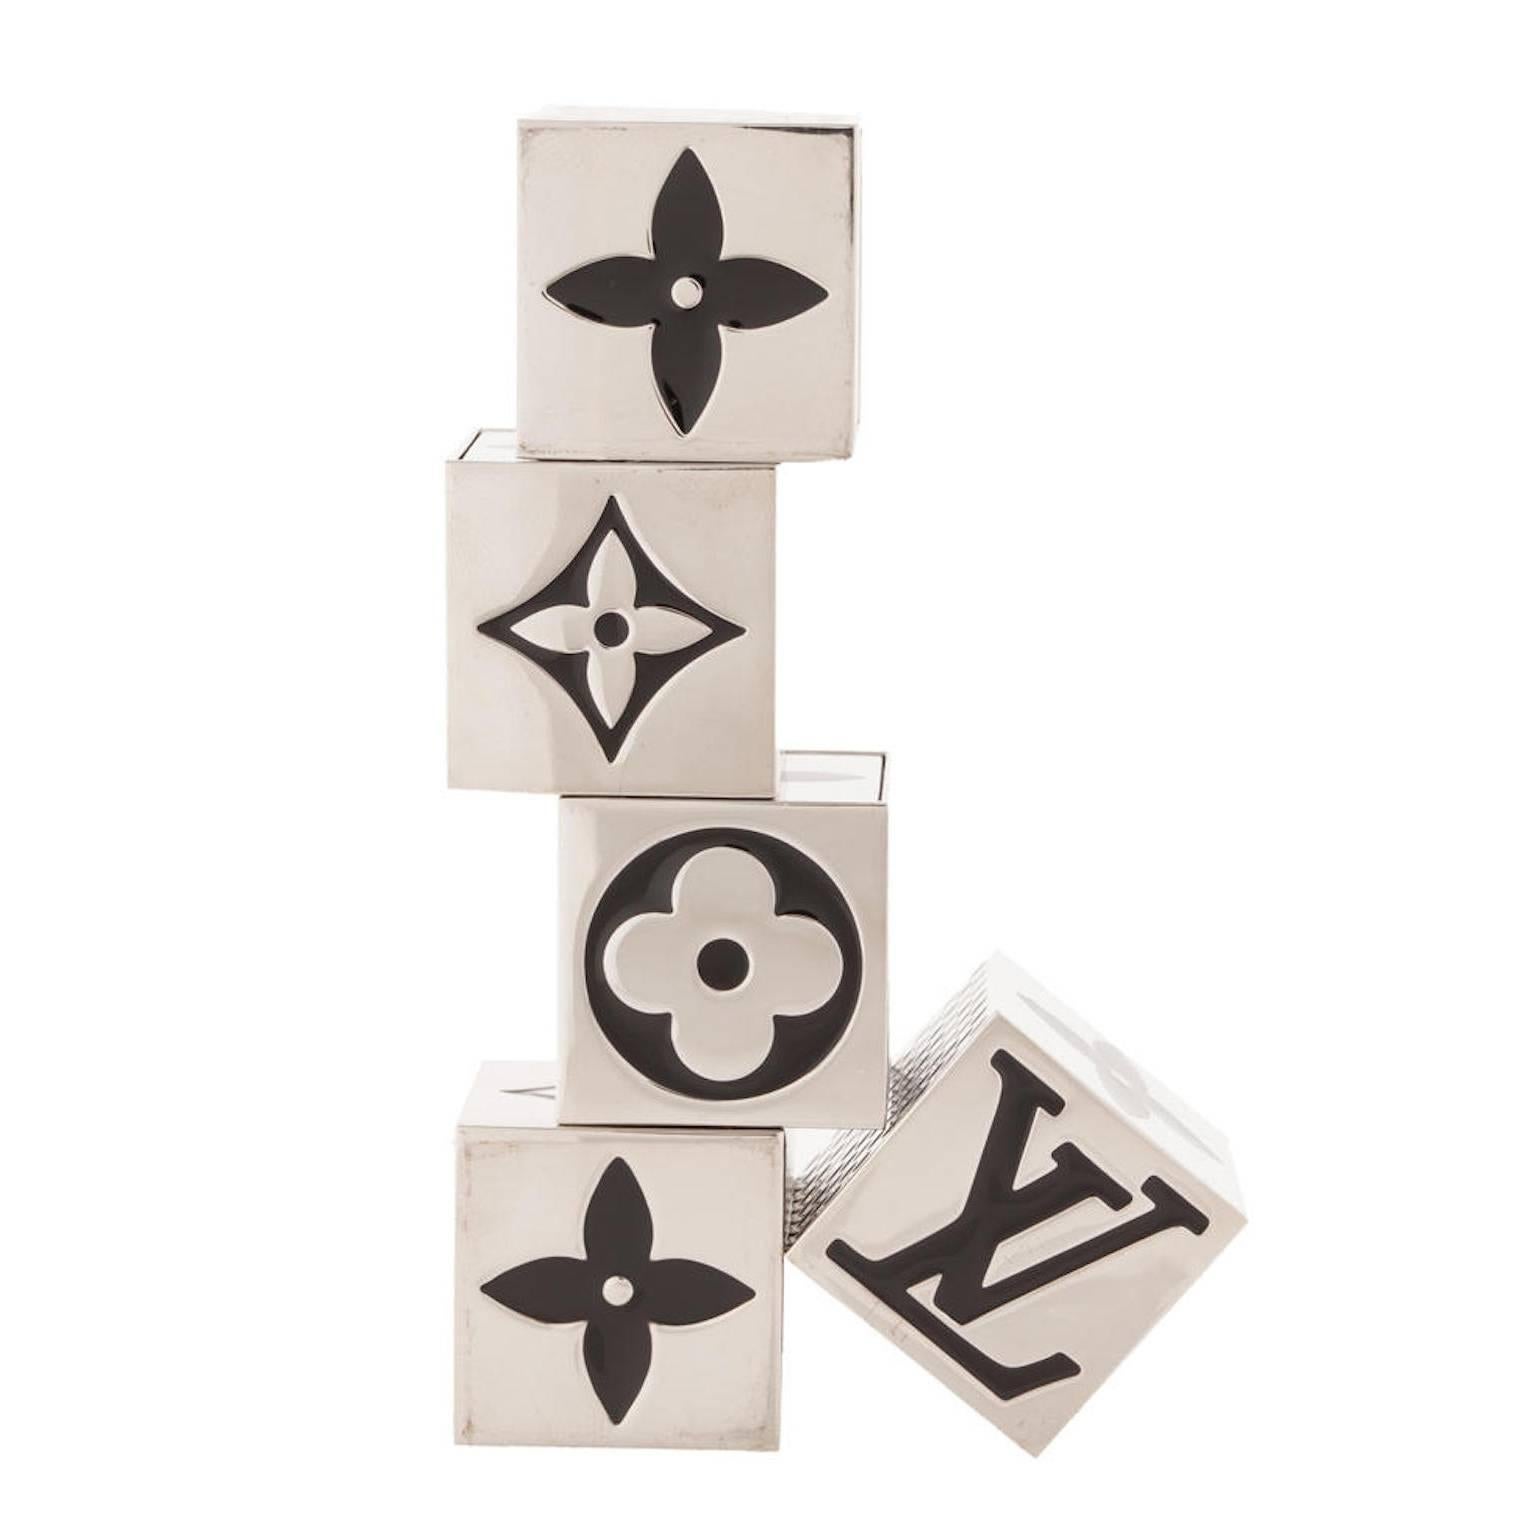 Louis Vuitton New Palladium Logo Five-Piece Dice Die Cube Game in Box